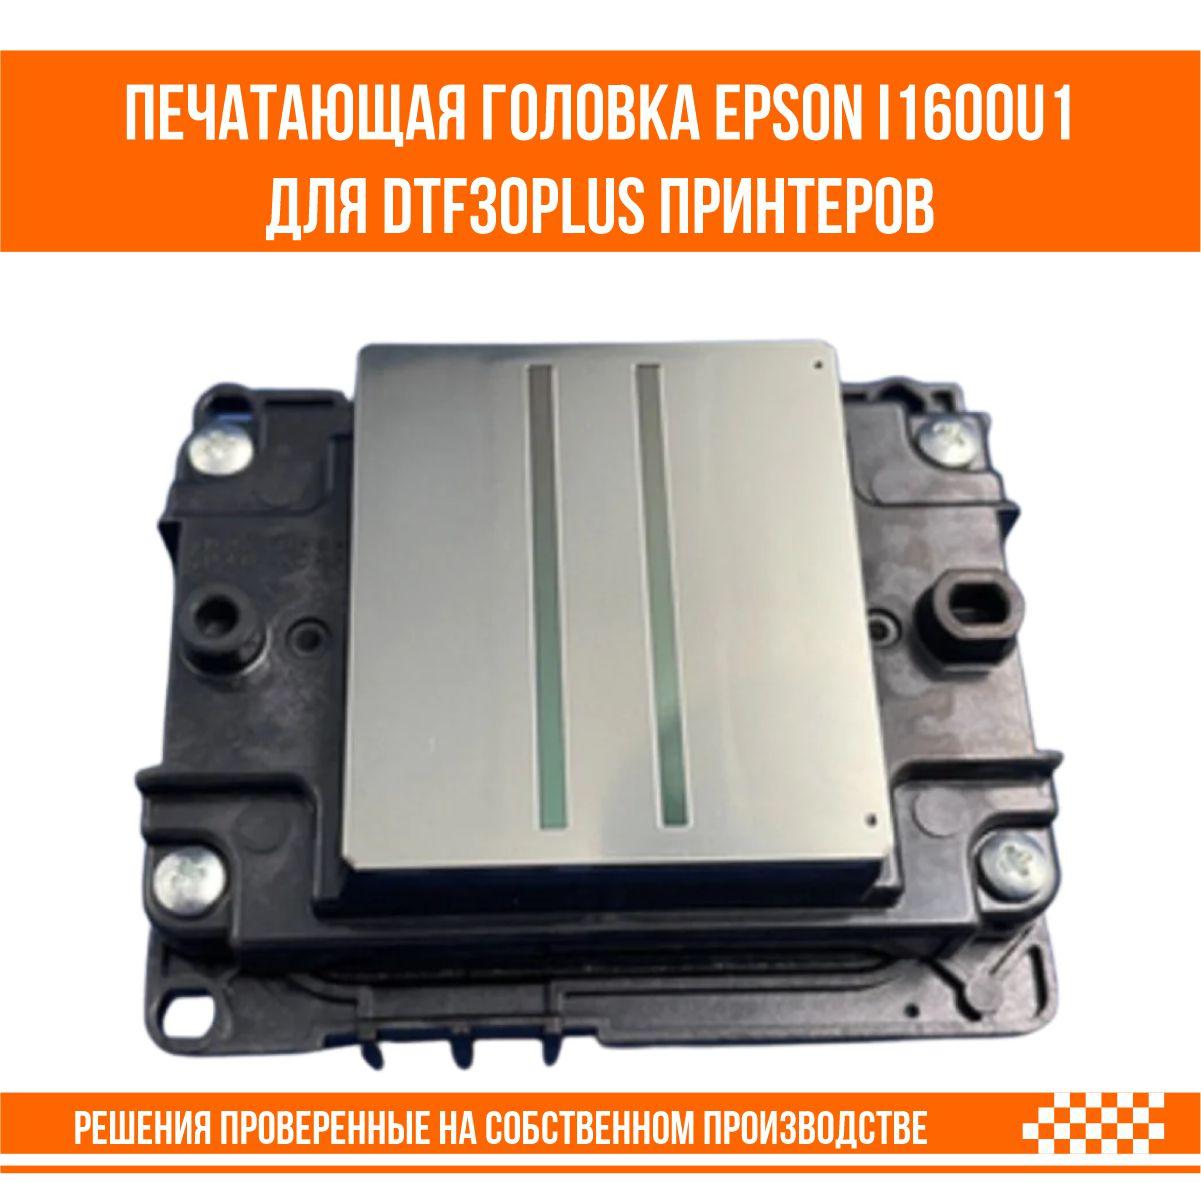 Печатающая головка Epson i1600-u1 для UV DTF 30 PLUS принтера, фото 1